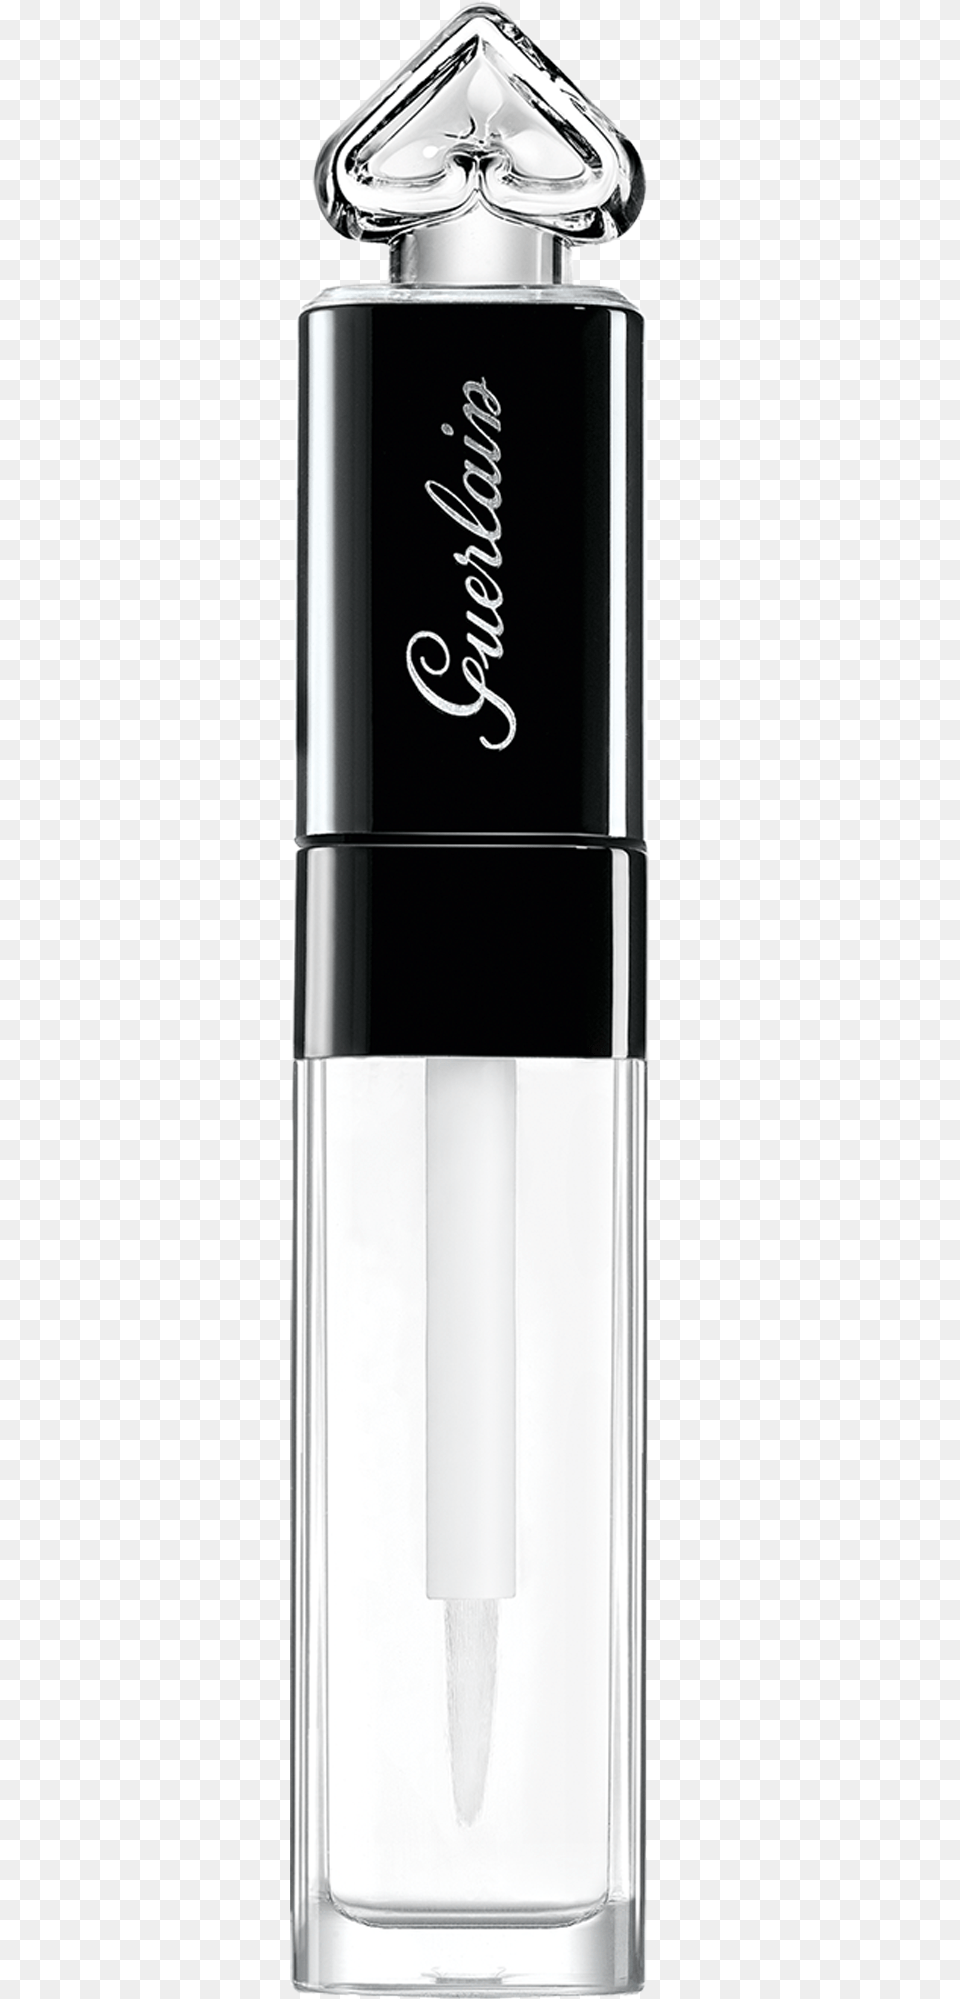 La Petite Robe Noire Lip Amp Shine Guerlain La Petite Robe Noire Lipstick, Bottle, Cosmetics, Perfume Png Image